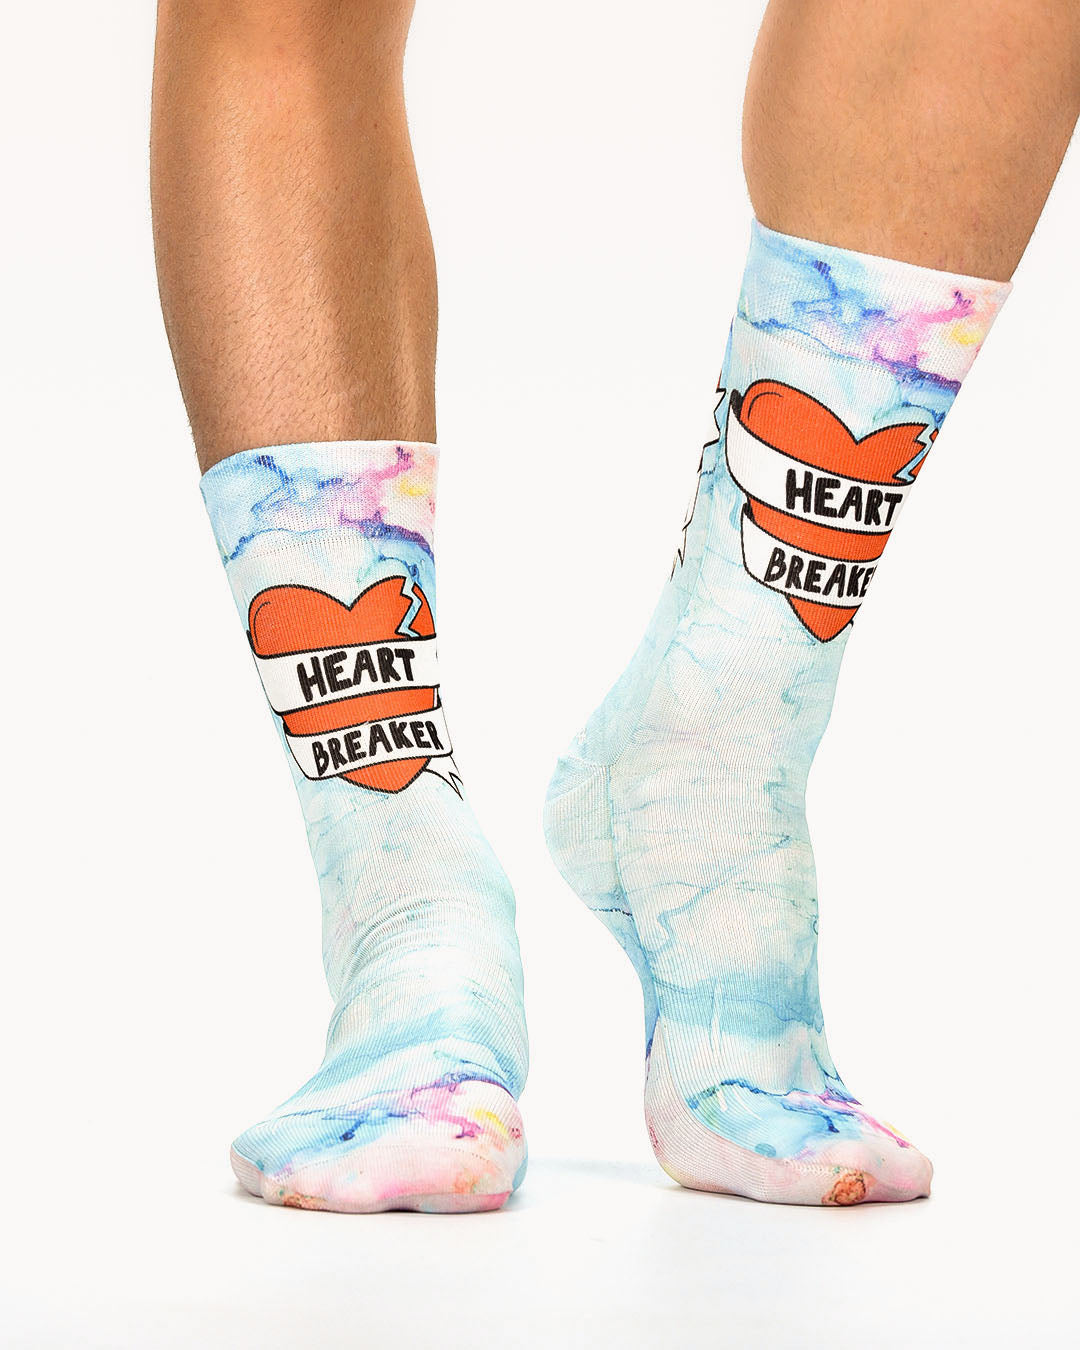 Heartbreaker Man Sock